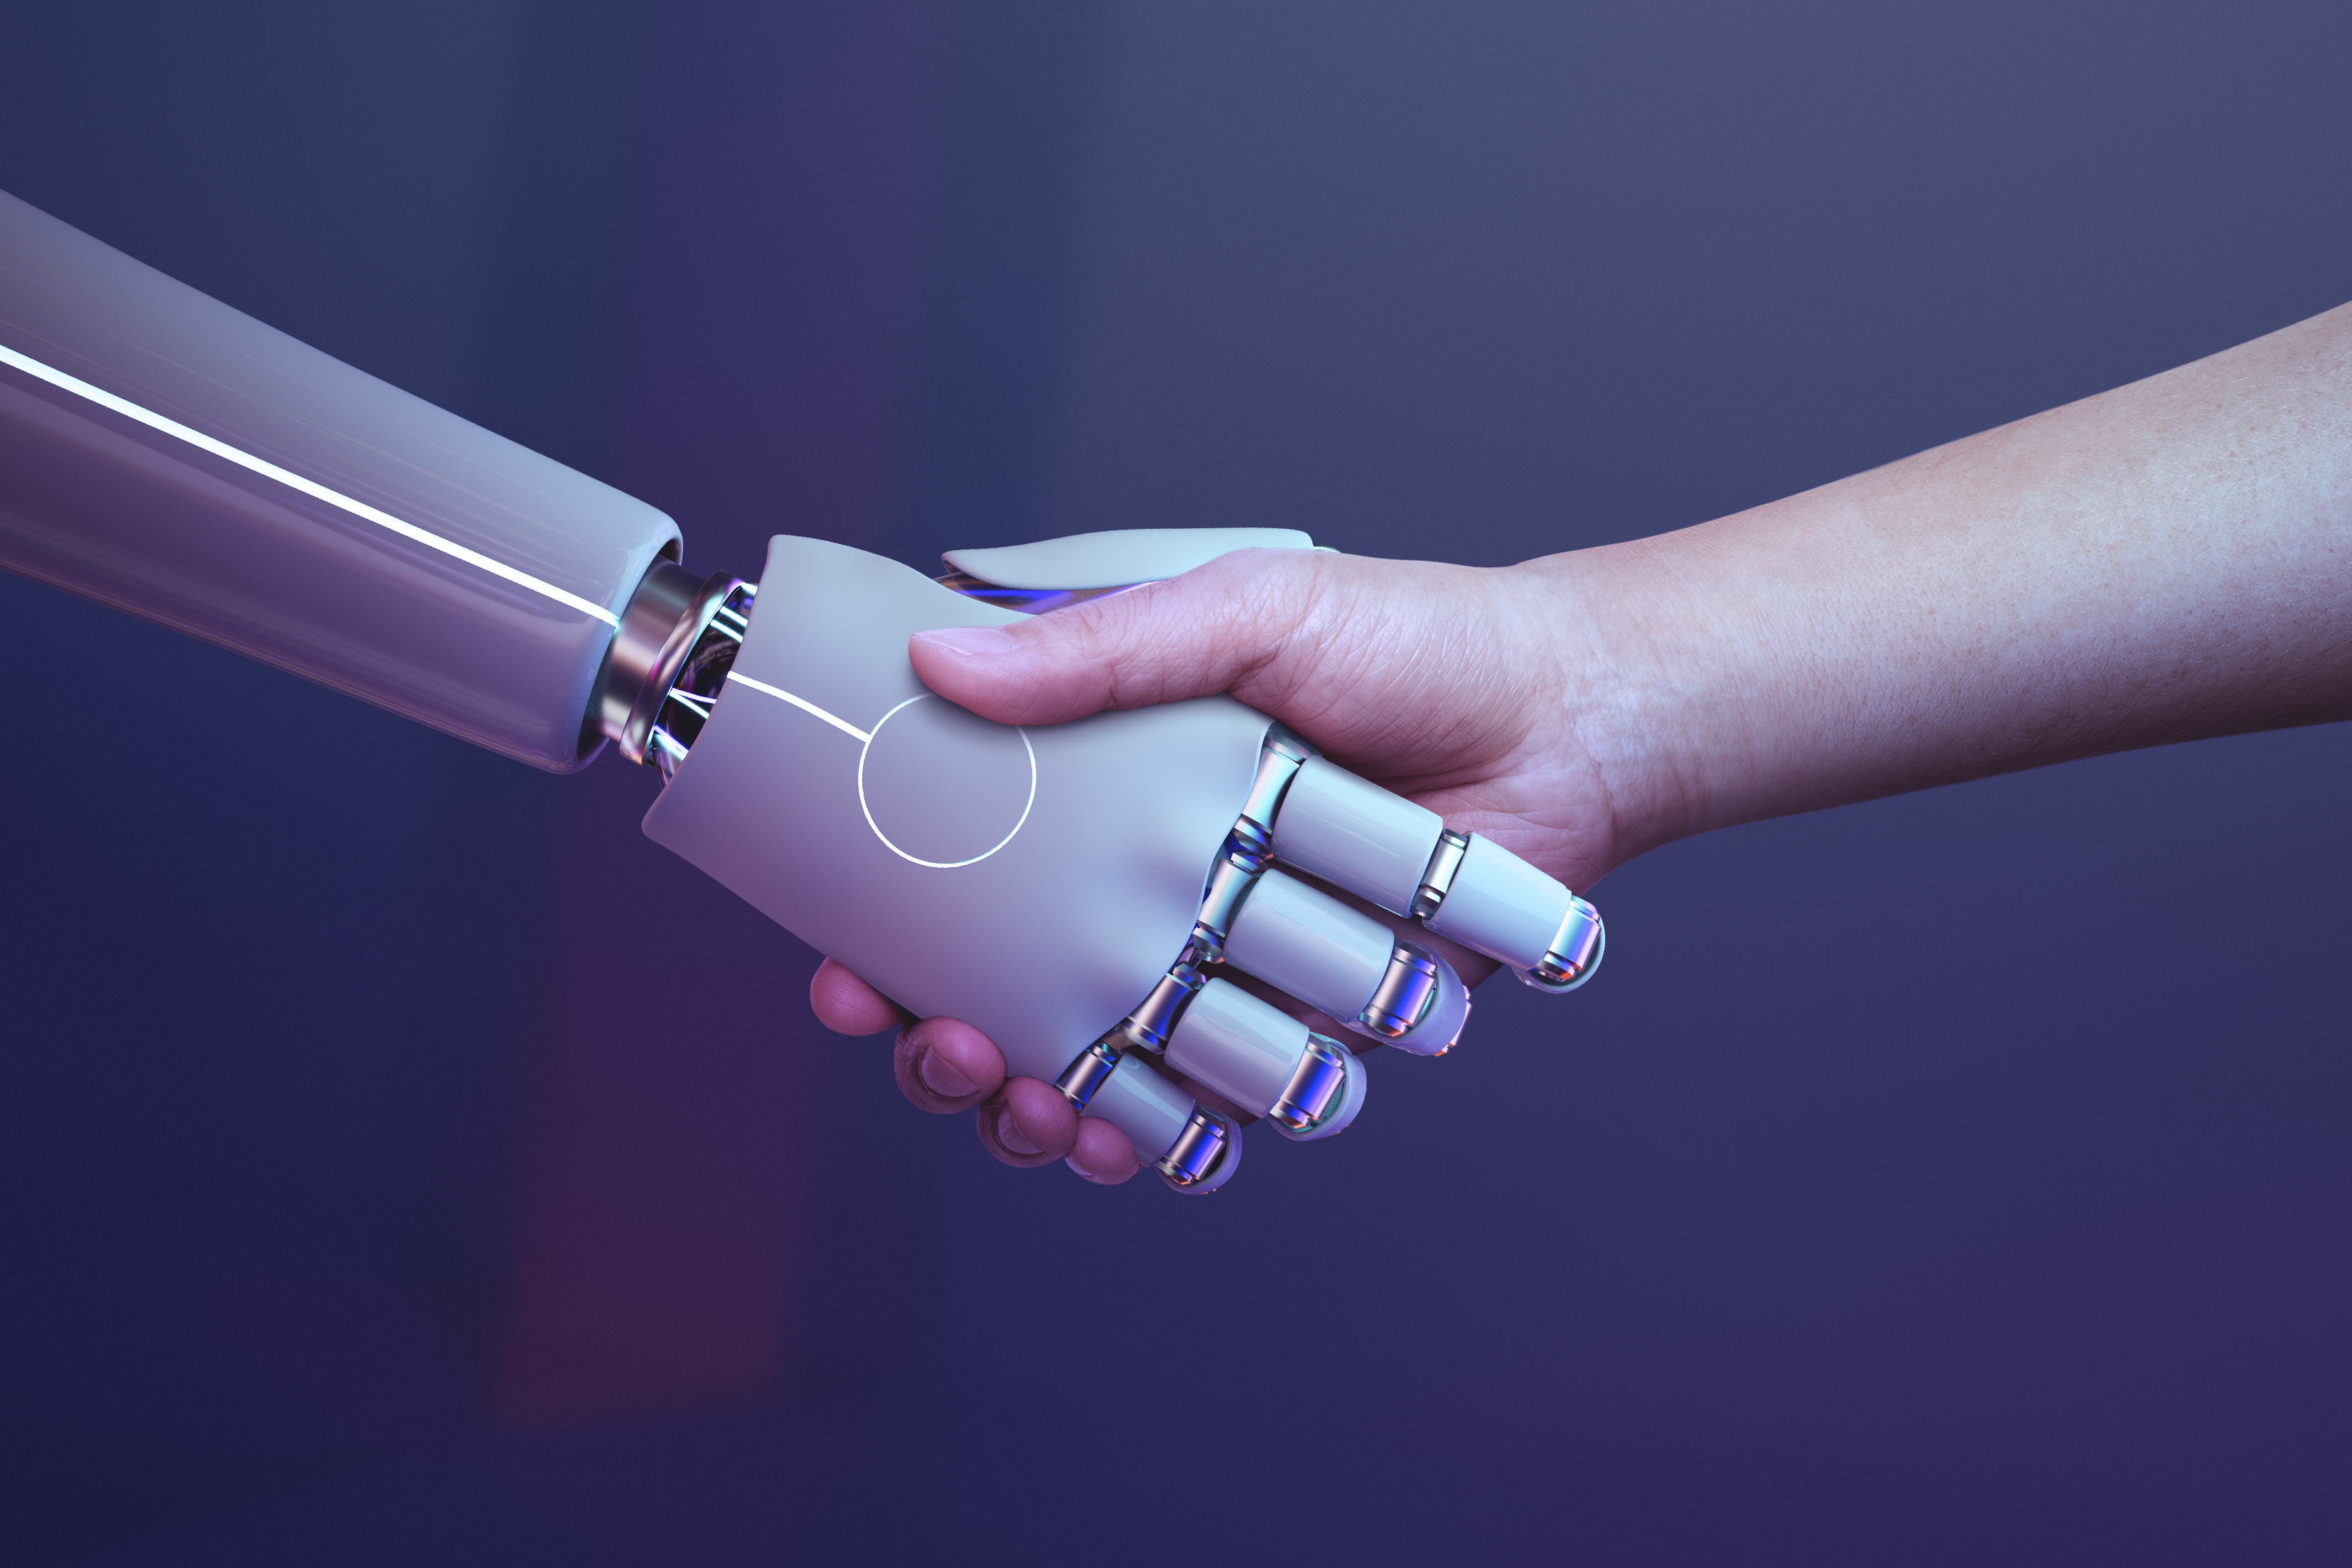 Aperto de mãos entre robô e ser humano